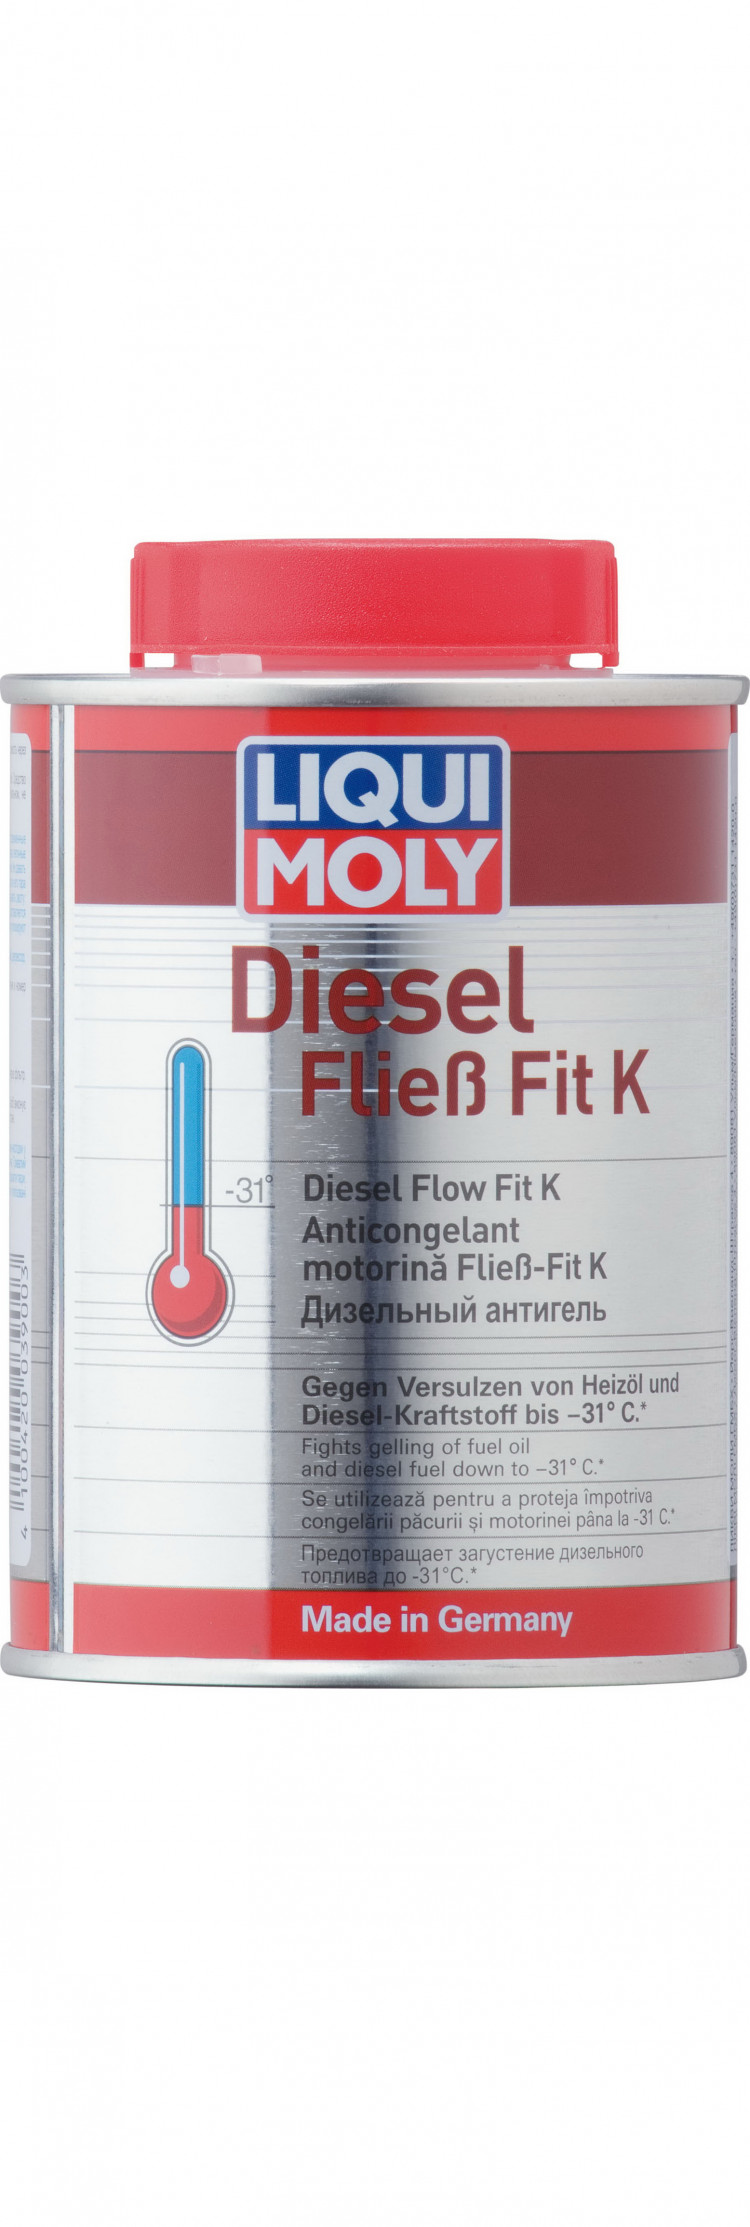 LIQUI MOLY Diesel Fliess-Fit K дизельный антигель концентрат купить в  интернет-магазине